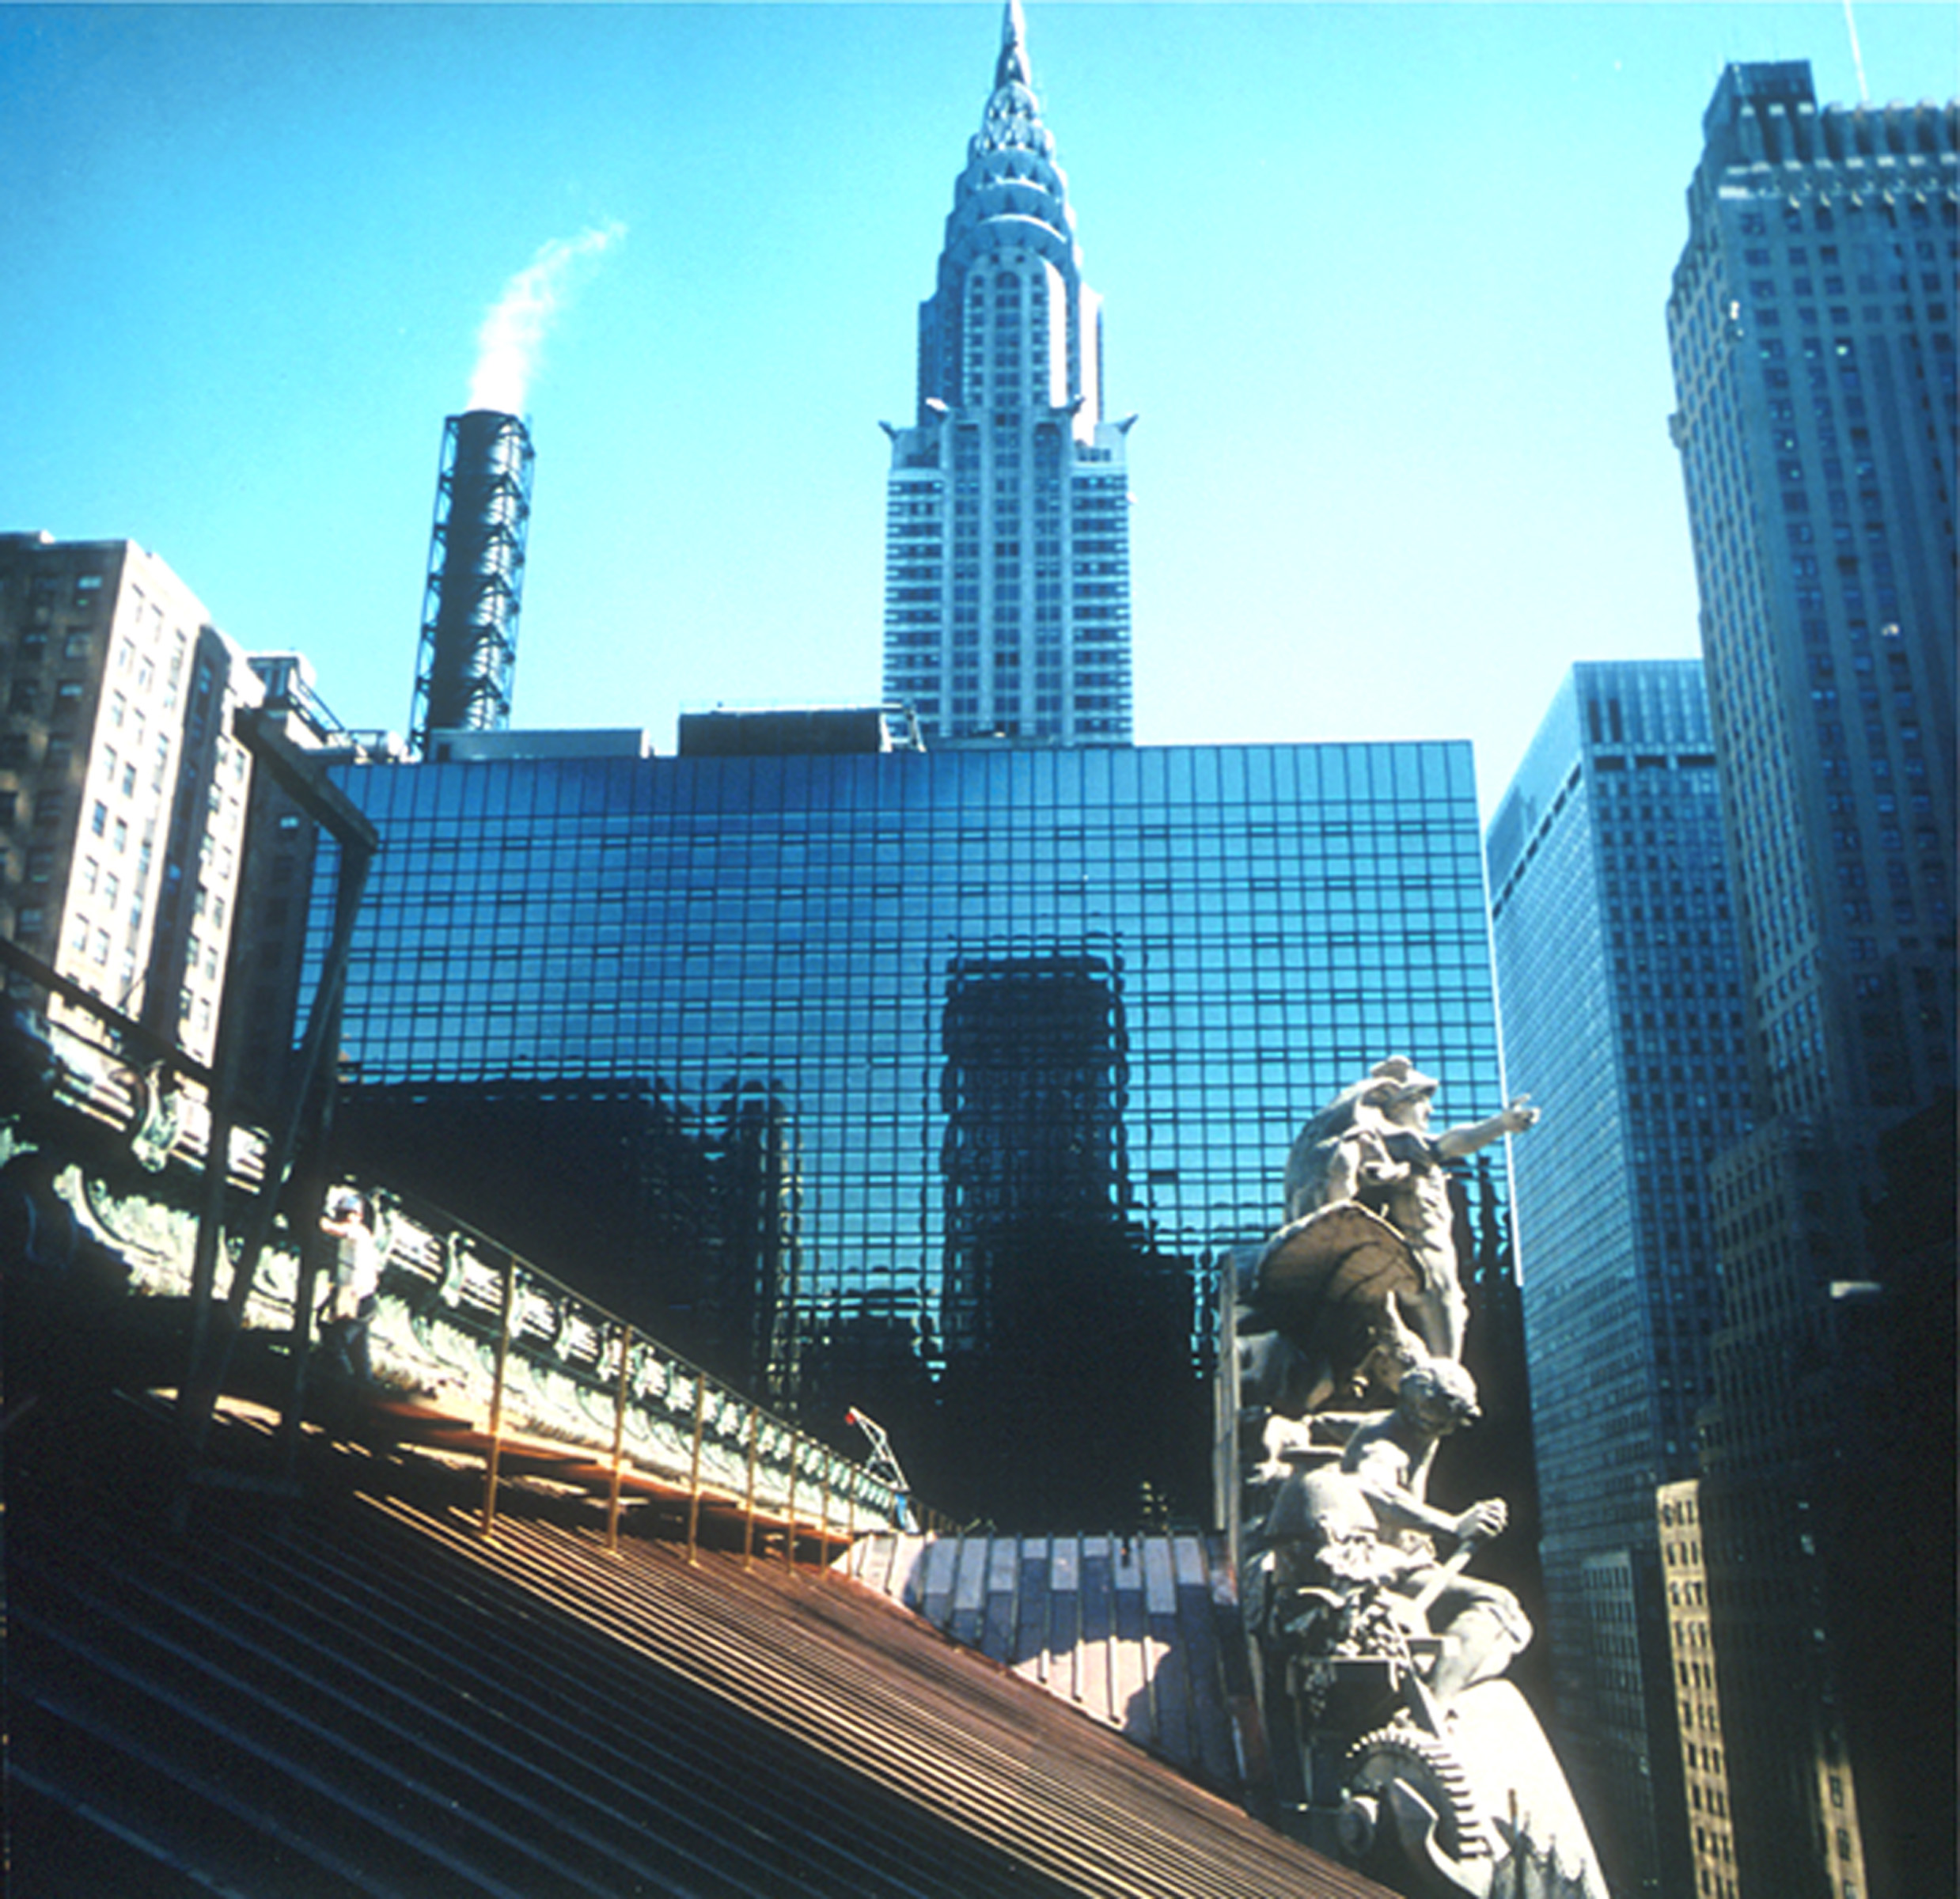 Grand Central - Roof & Chrysler Building.jpg